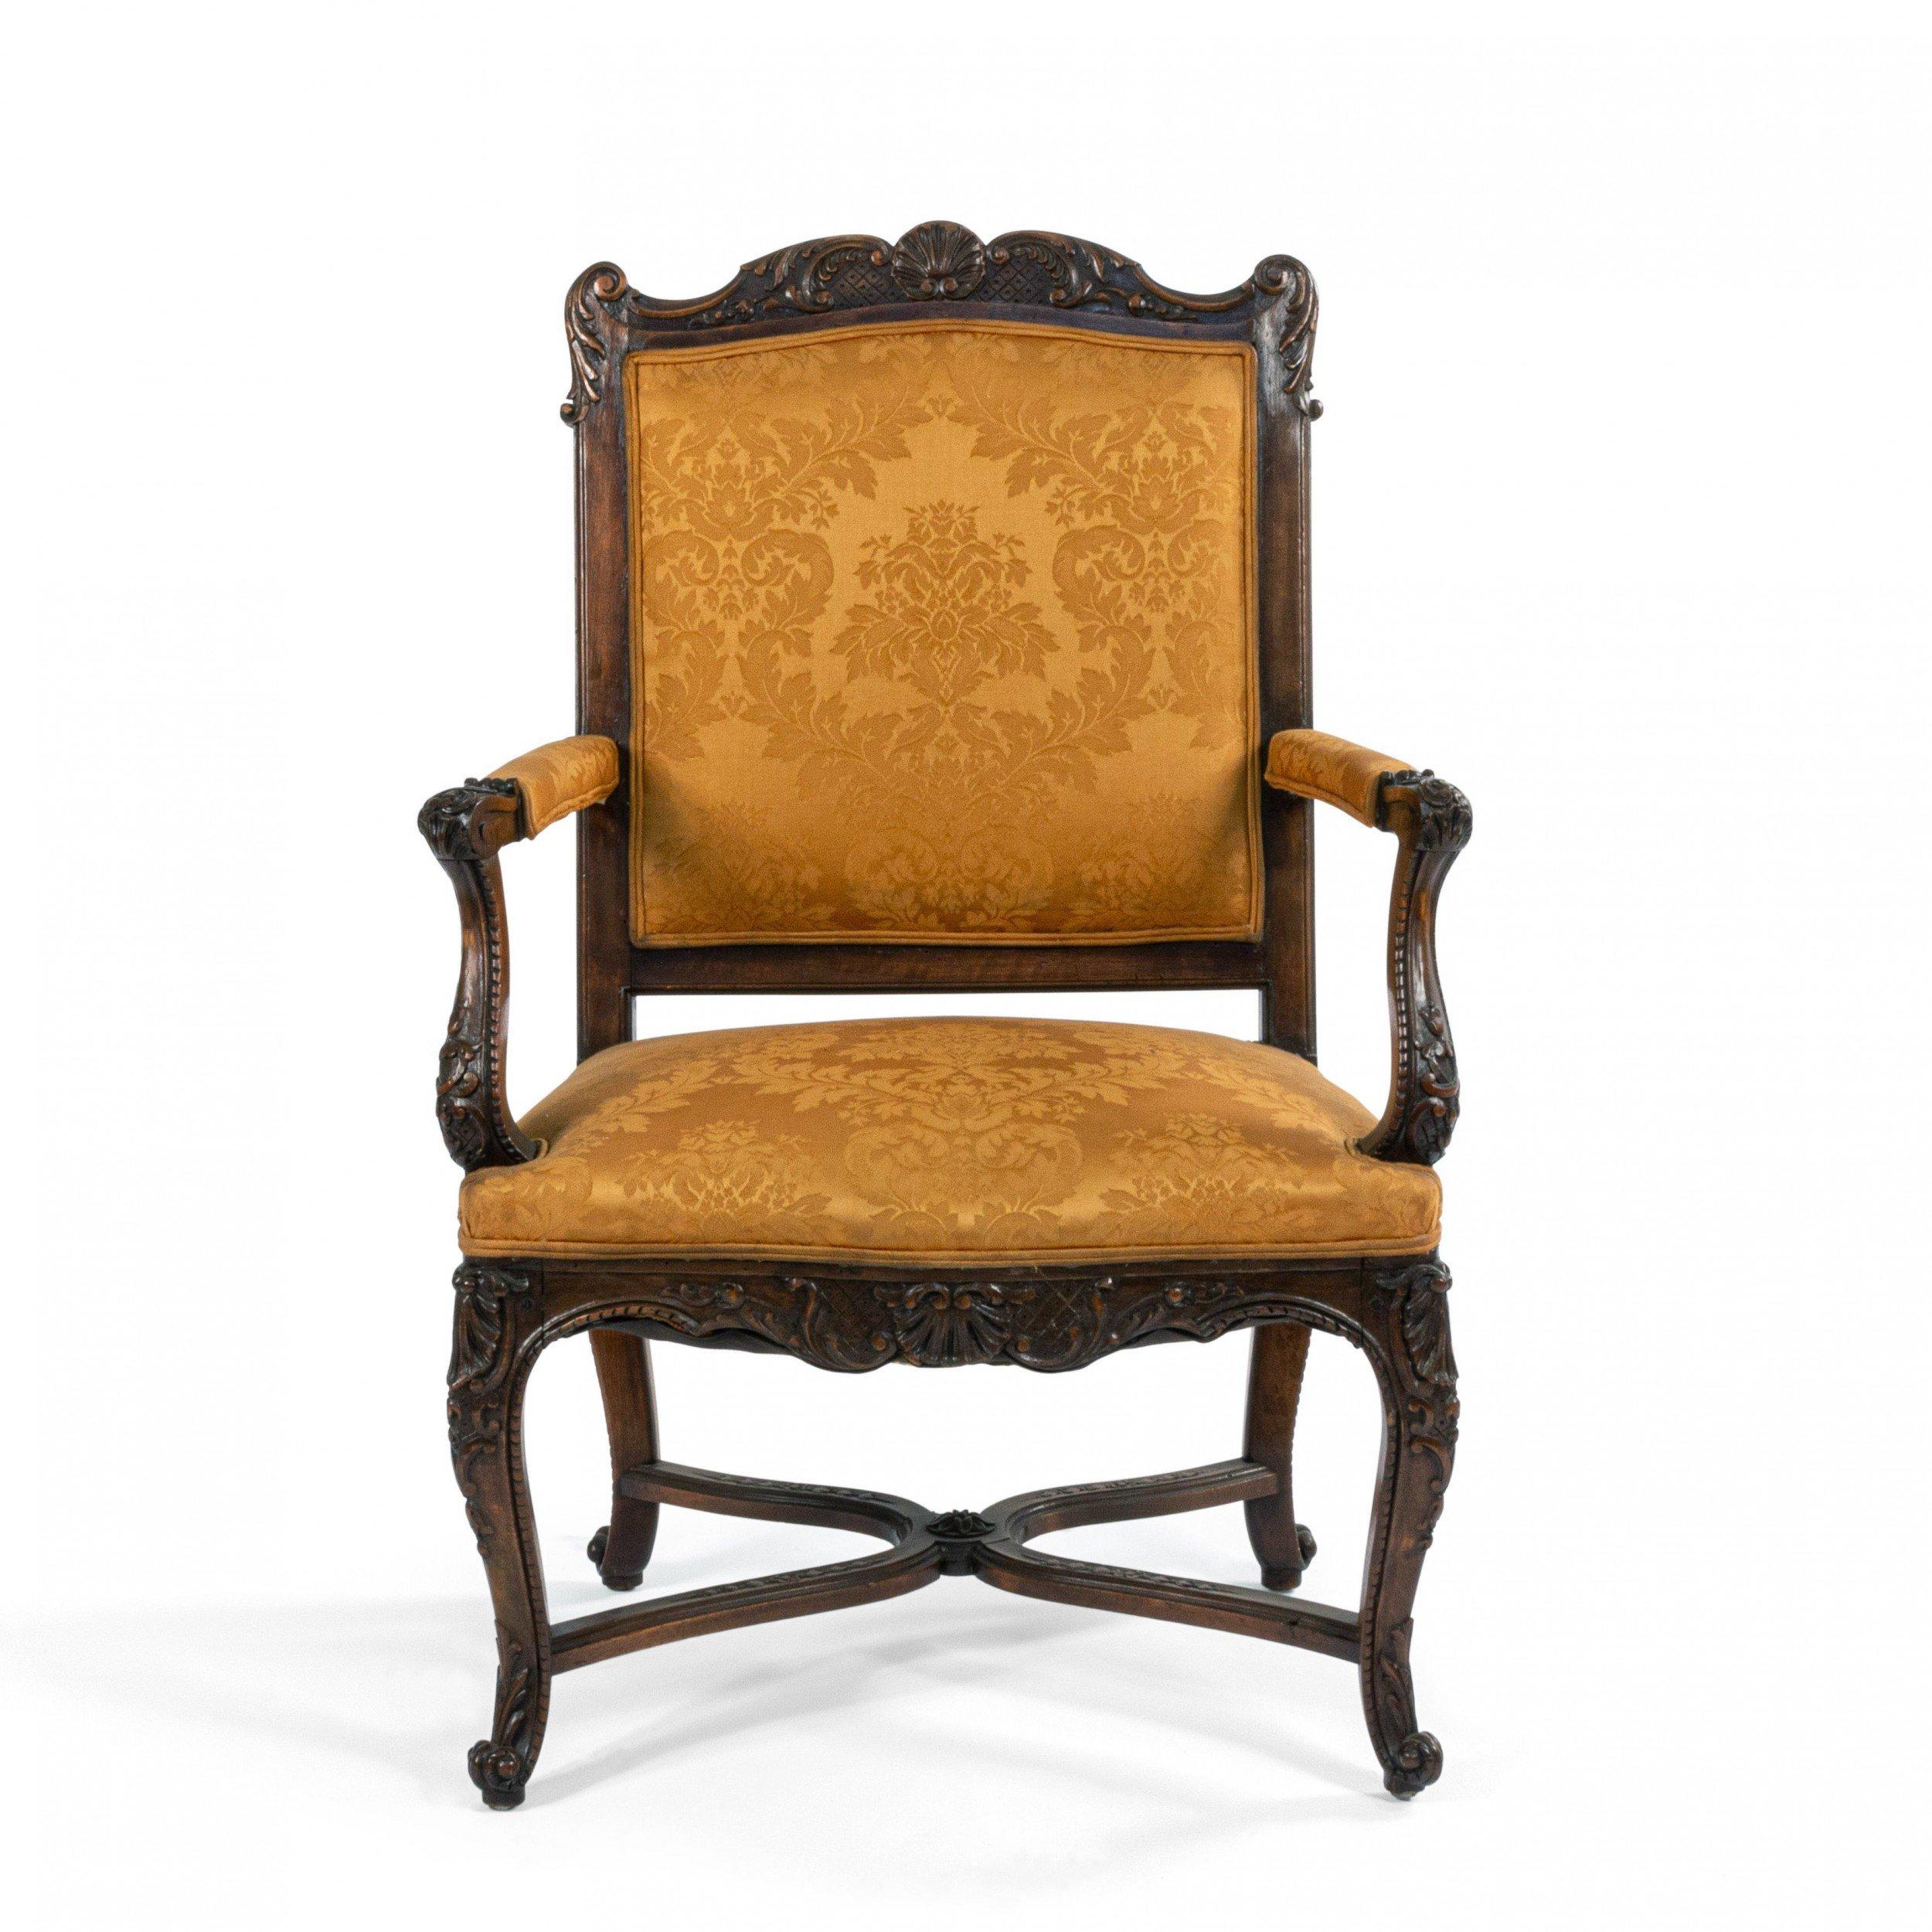 Paar französische Sessel aus Nussbaum im Regence-Stil (19. Jh.) mit Goldpolsterung.
 